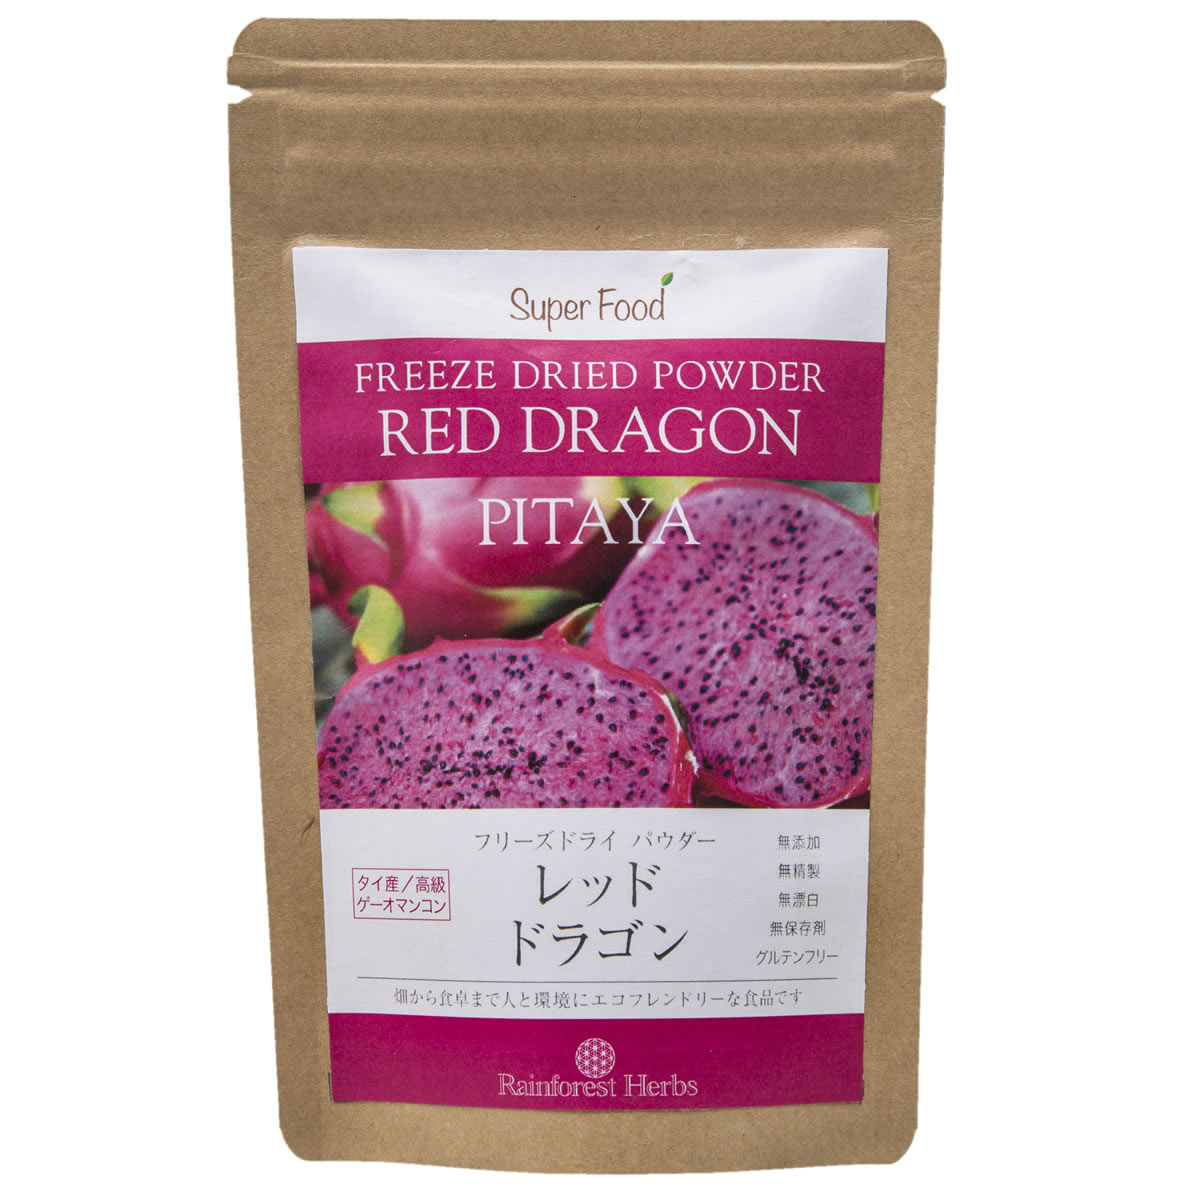 レッドドラゴンフルーツ ピタヤパウダー 60g 1袋 フリーズドライ タイ産 Red Dragon Fruit Freeze Dried Powder PITA…